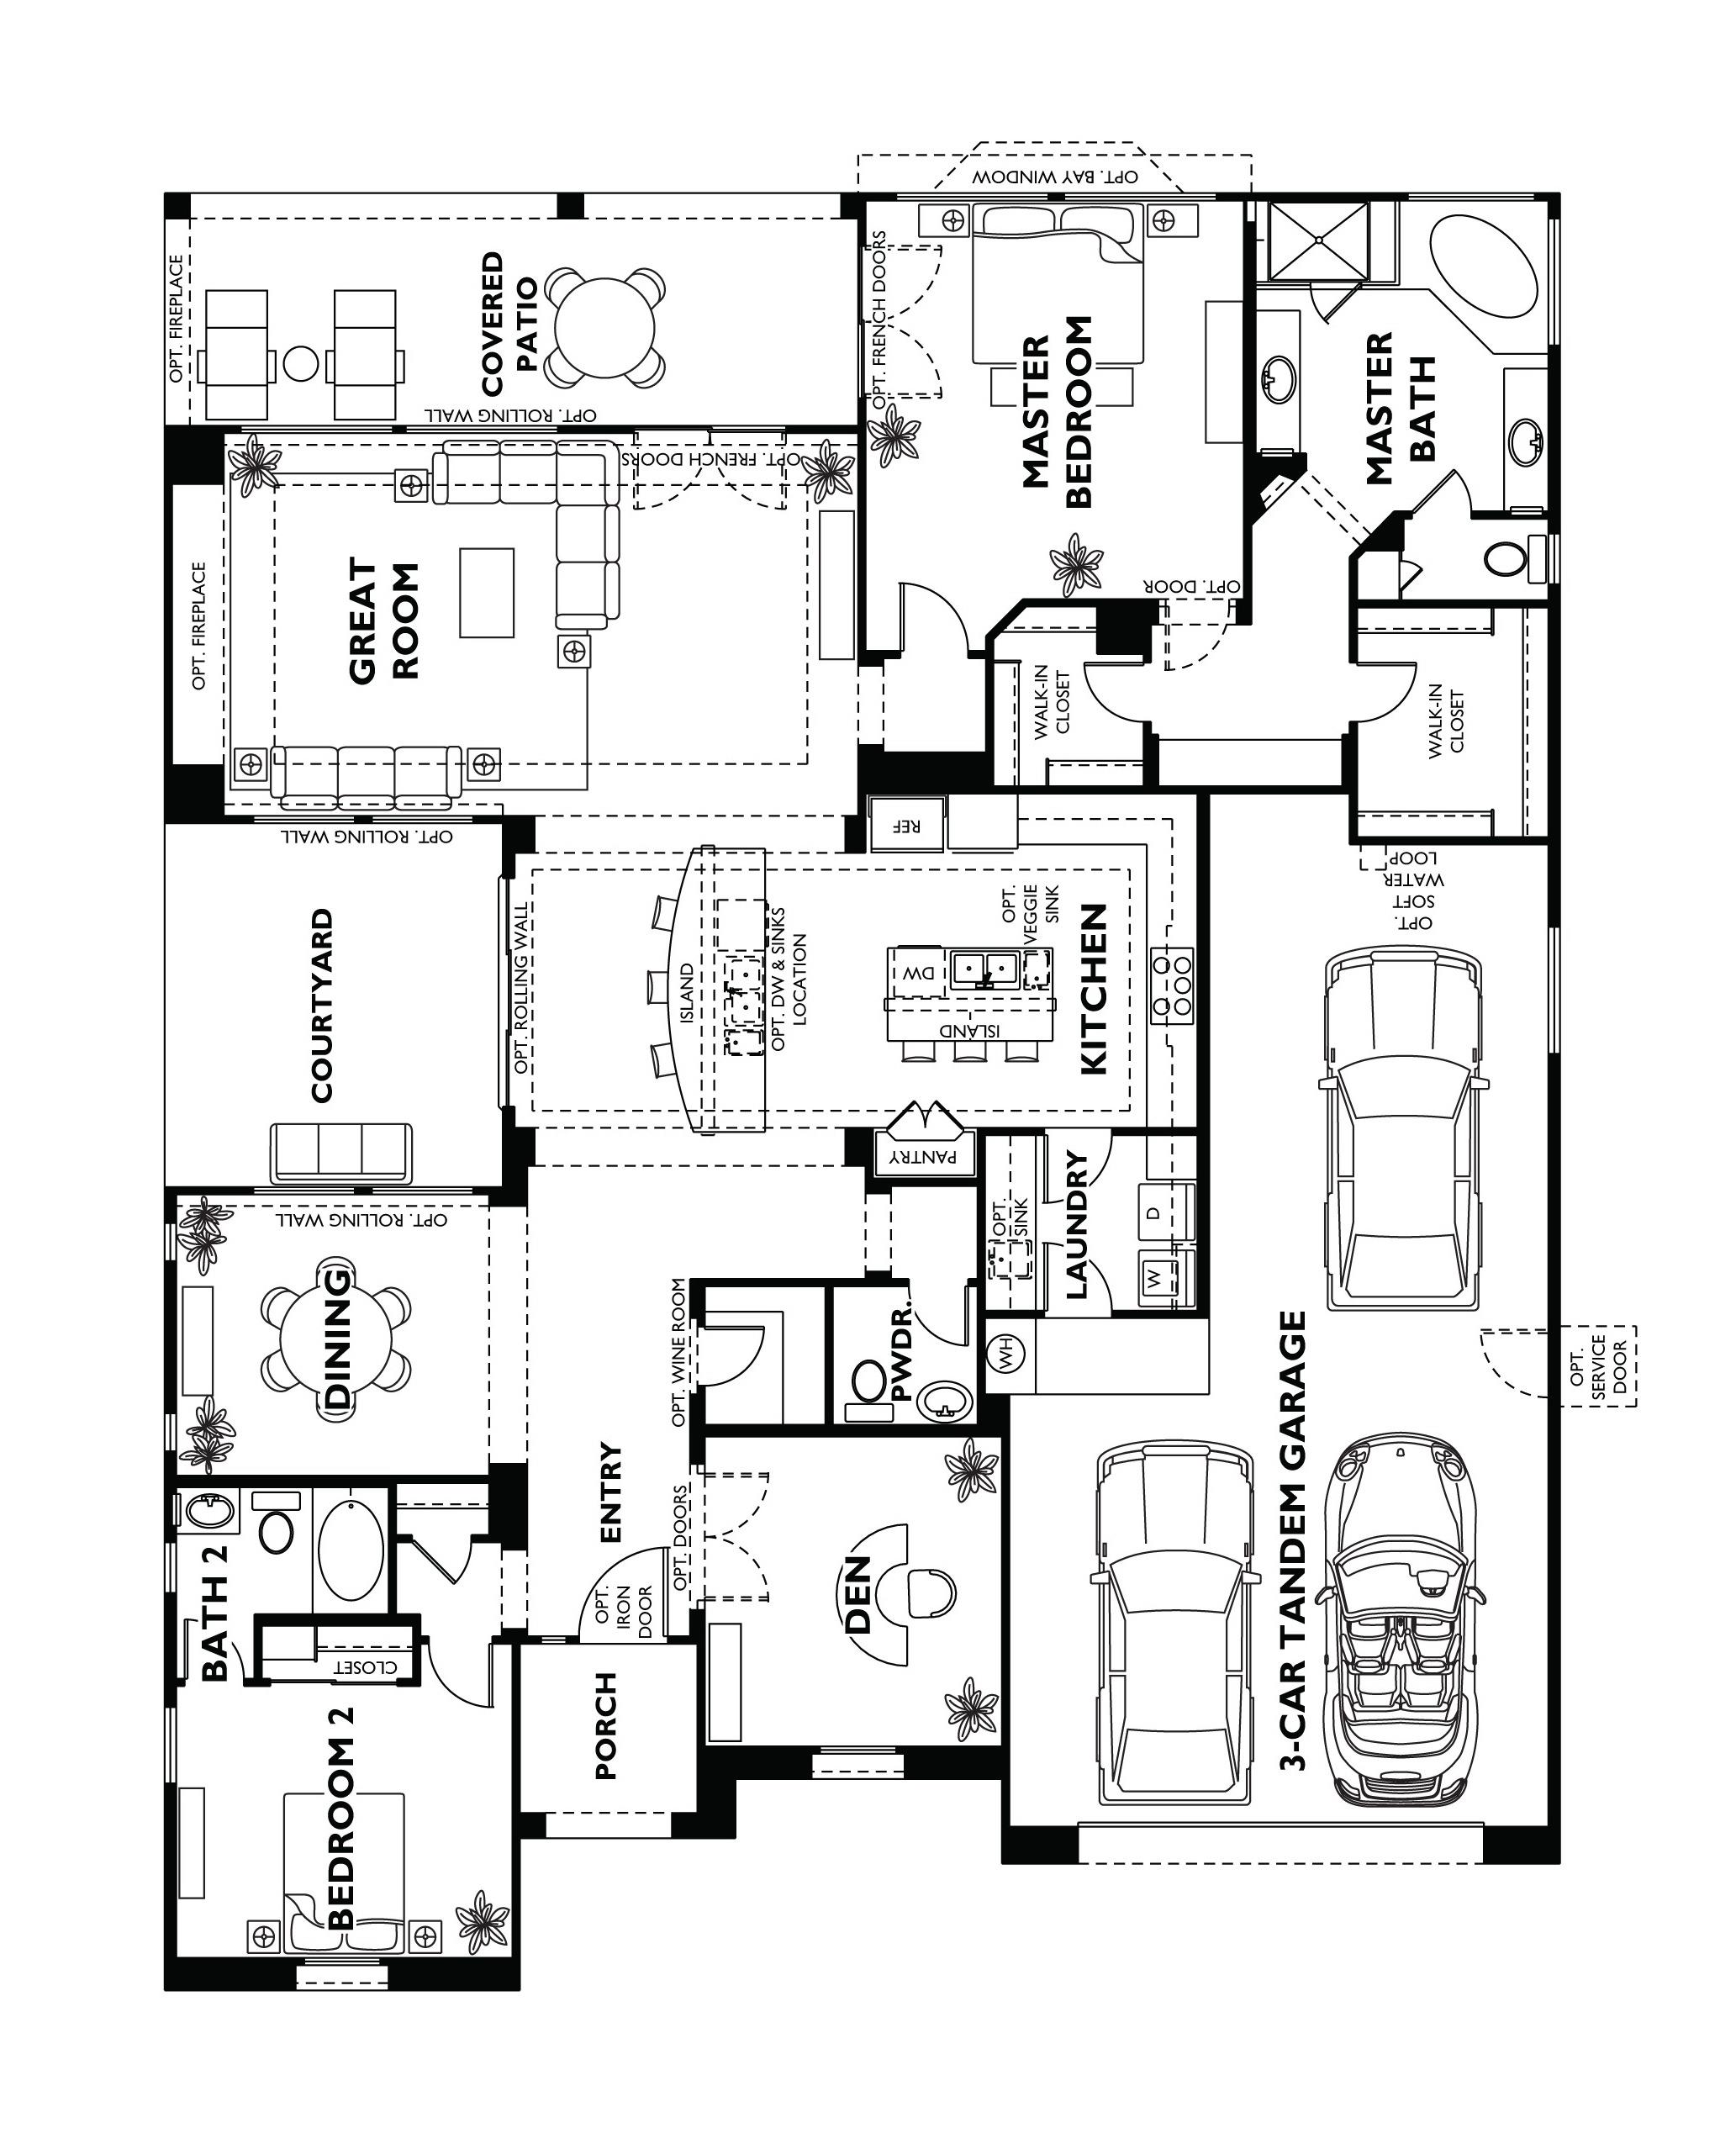 Trilogy at Vistancia Tarragona Floor Plan model home